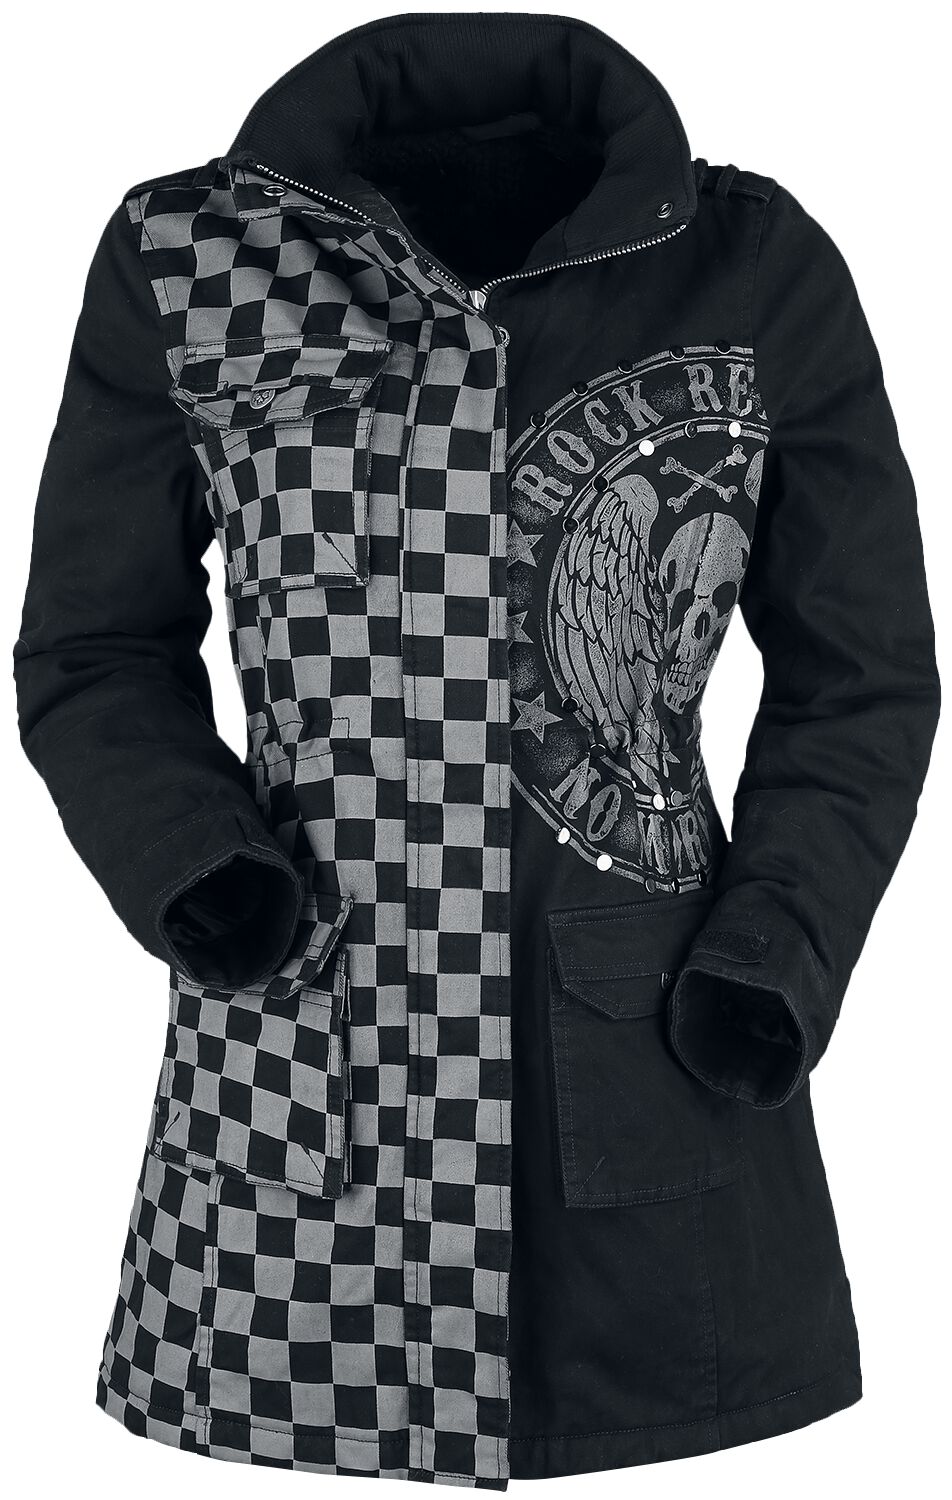 Rock Rebel by EMP - Rock Winterjacke - schwarz/graue Jacke mit Nieten und Print - S bis XXL - für Damen - Größe M - grau/schwarz